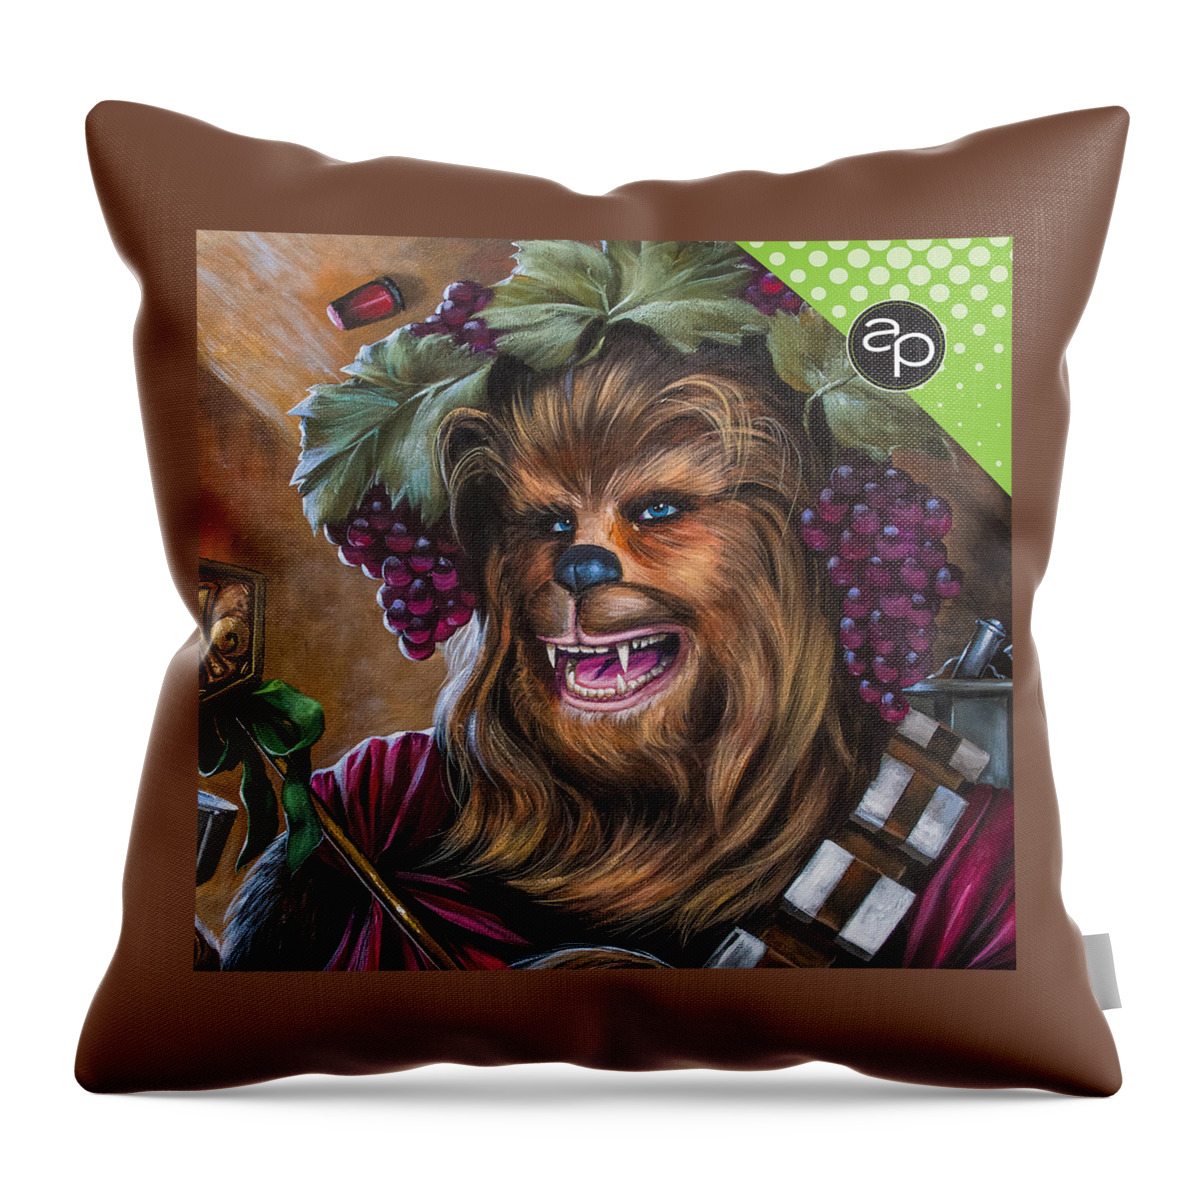 Intergalactic Krewe Of Chewbacchus Throw Pillow featuring the digital art Intergalactic Krewe of Chewbacchus by Art of the Parade Society